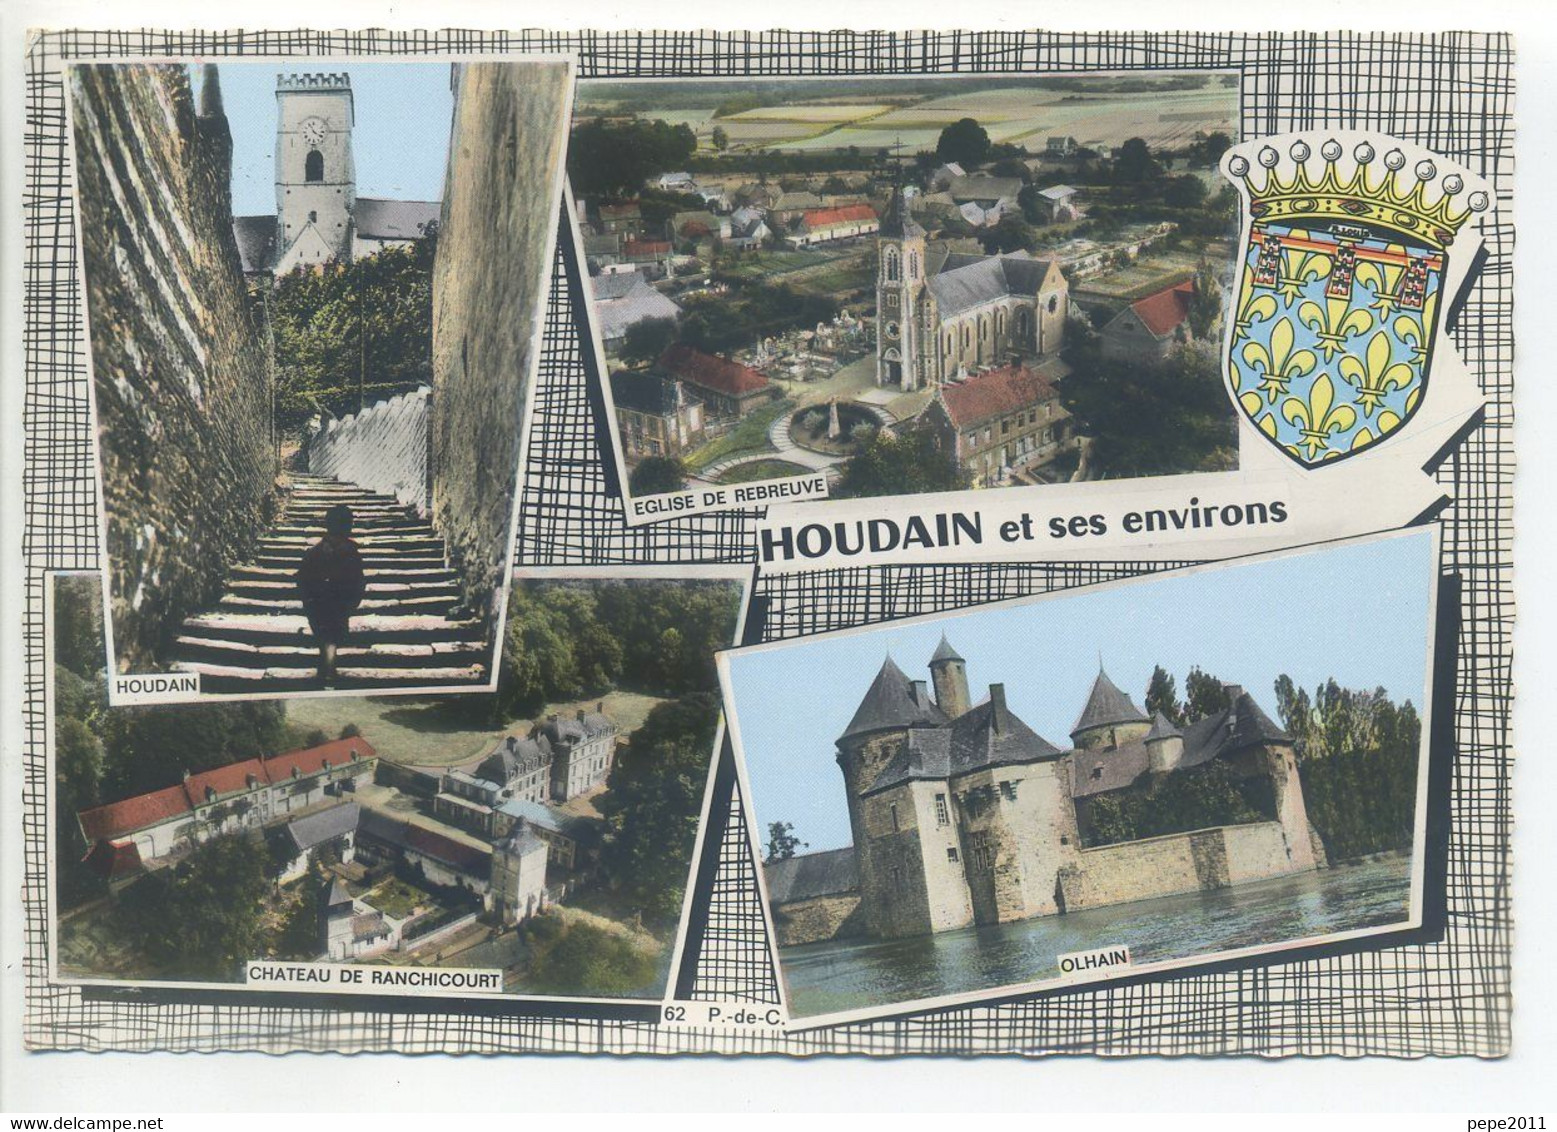 CPSM 62 - Pas De Calais - HOUDAIN Et Ses Environs Ranchicourt, Rebreuve - Multivues Blason - Houdain